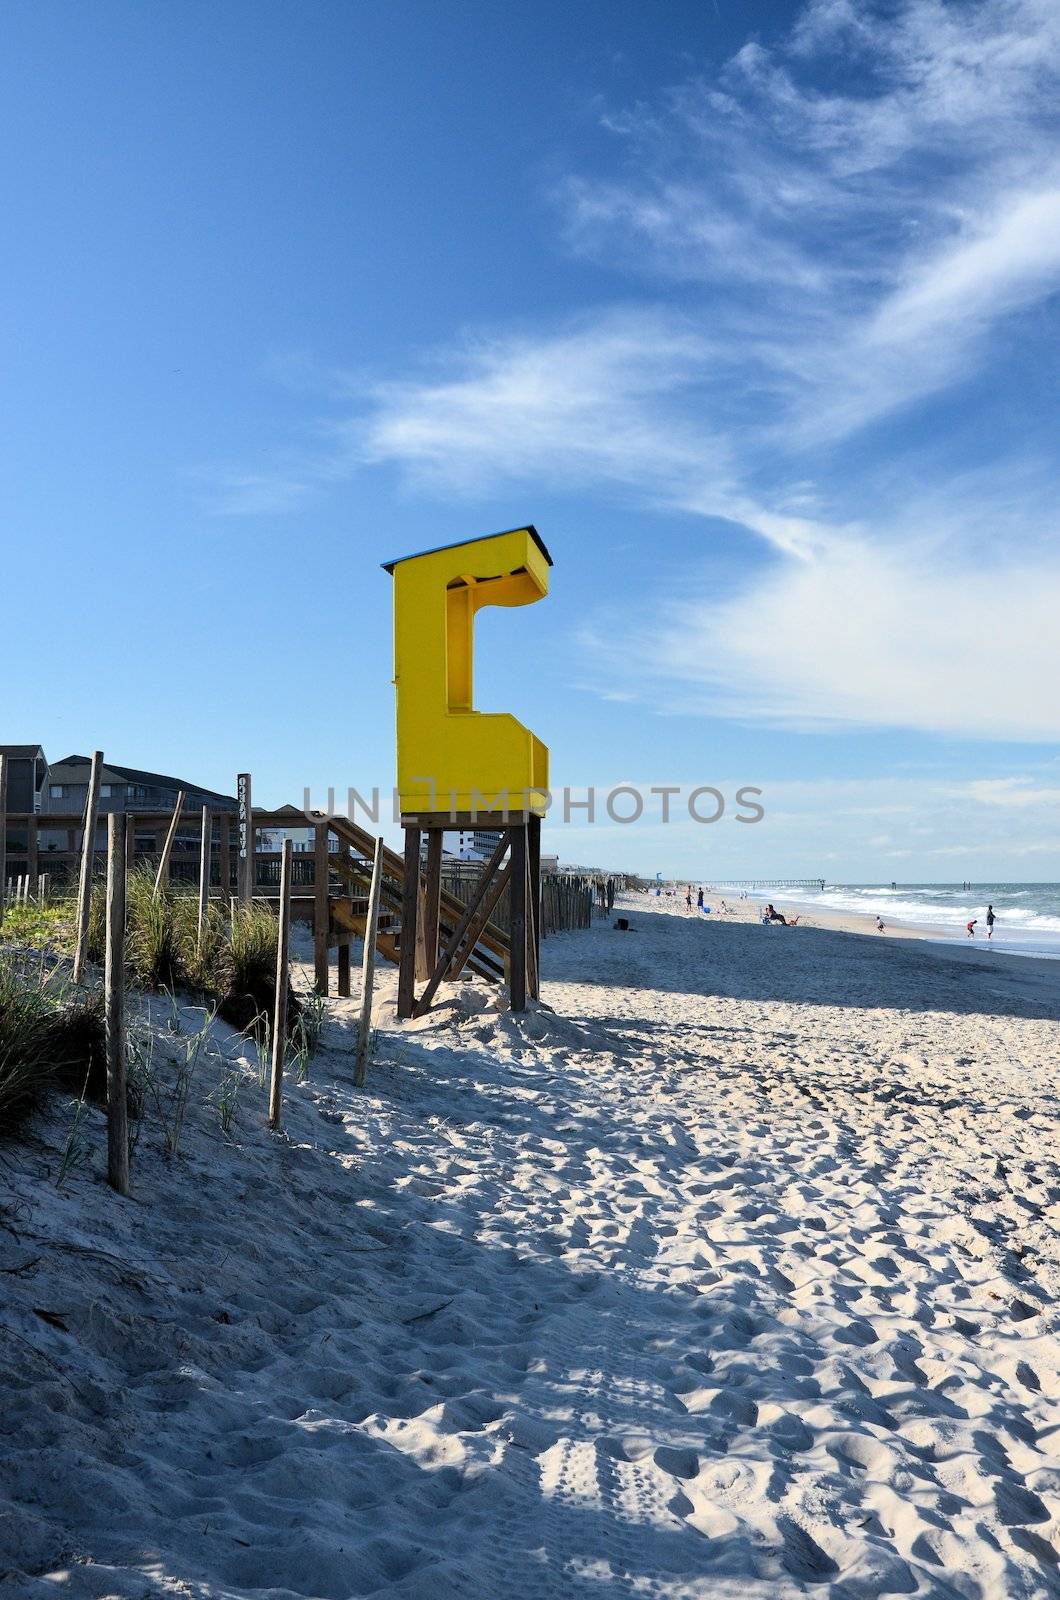 A yellow lifegaurd station at Carolina Beach in North Carolina